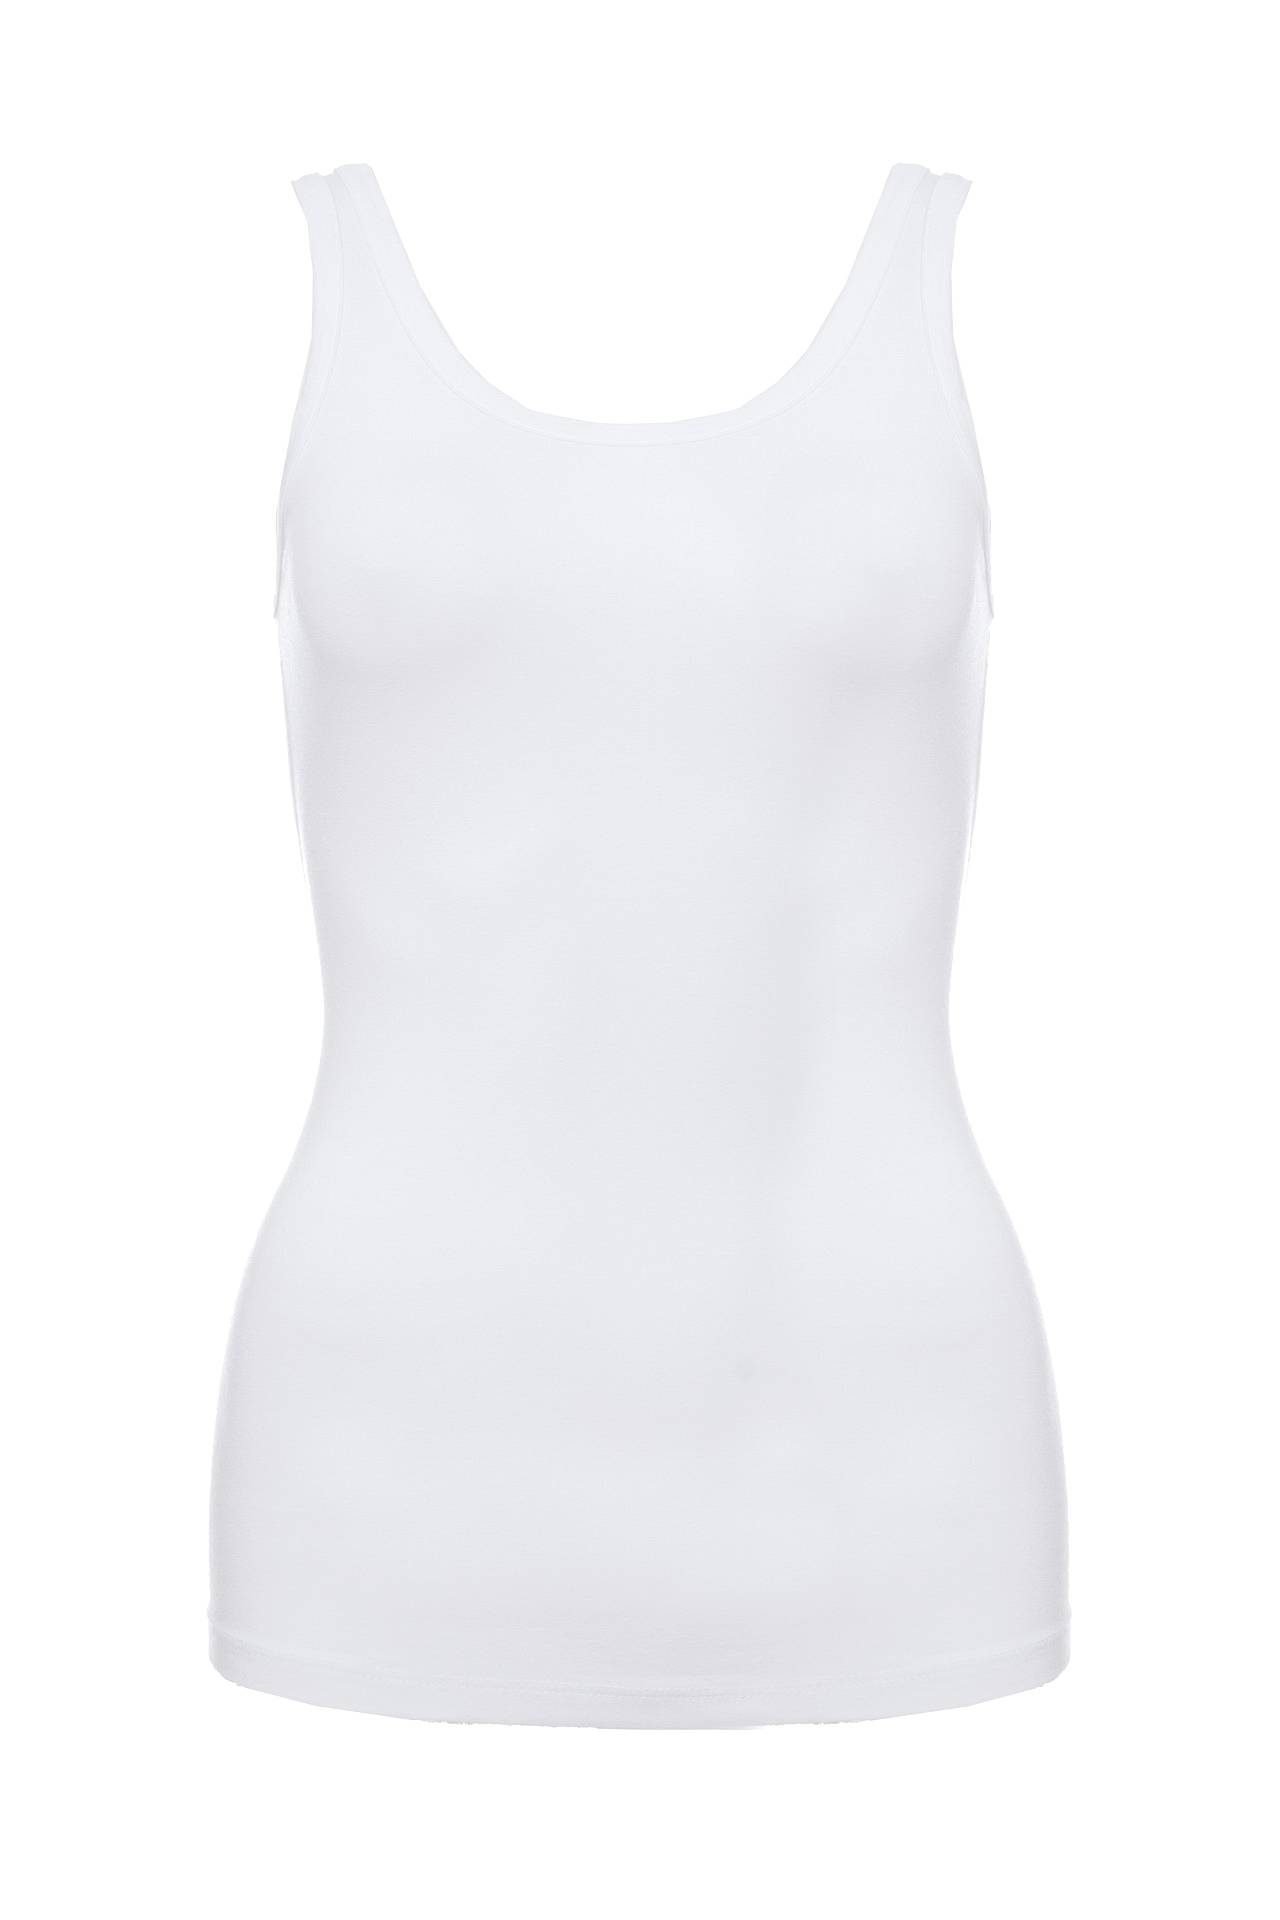 Одежда женская Майка NORTHLAND (UE0207/11.1). Купить за 3800 руб.